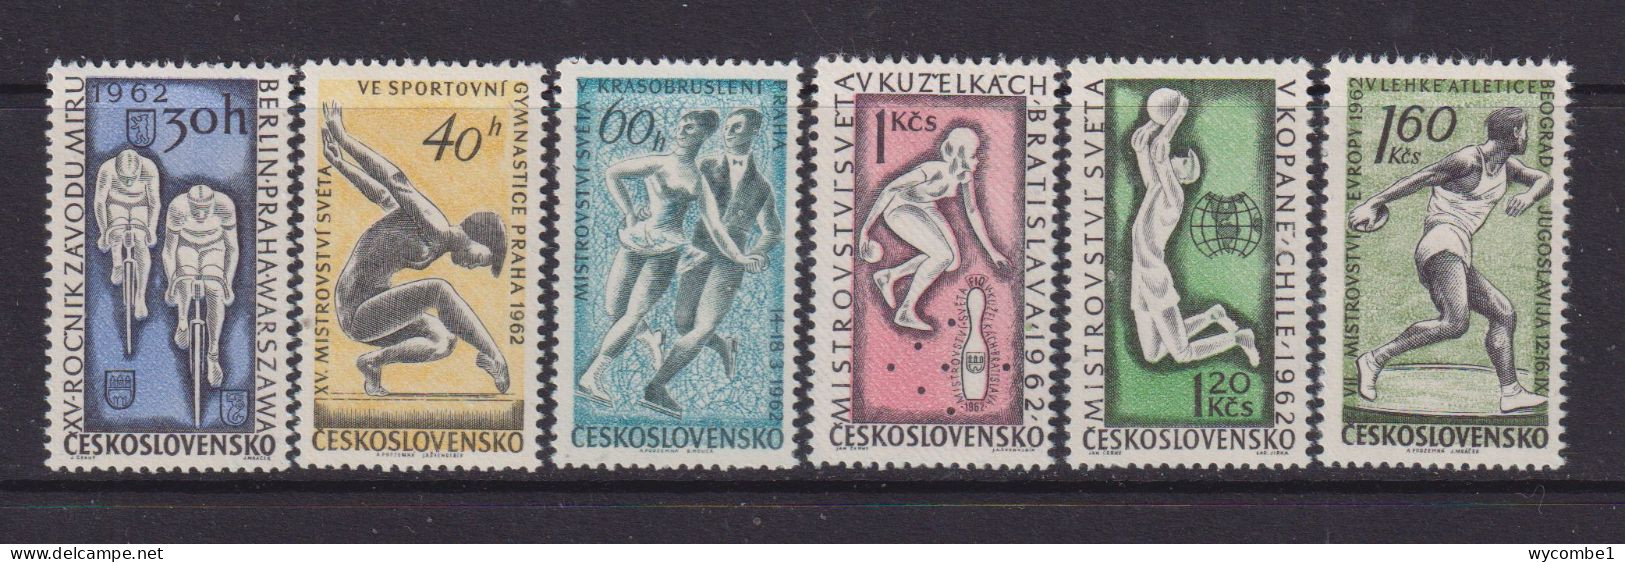 CZECHOSLOVAKIA  - 1962 Sports Events Set Never Hinged Mint - Nuovi